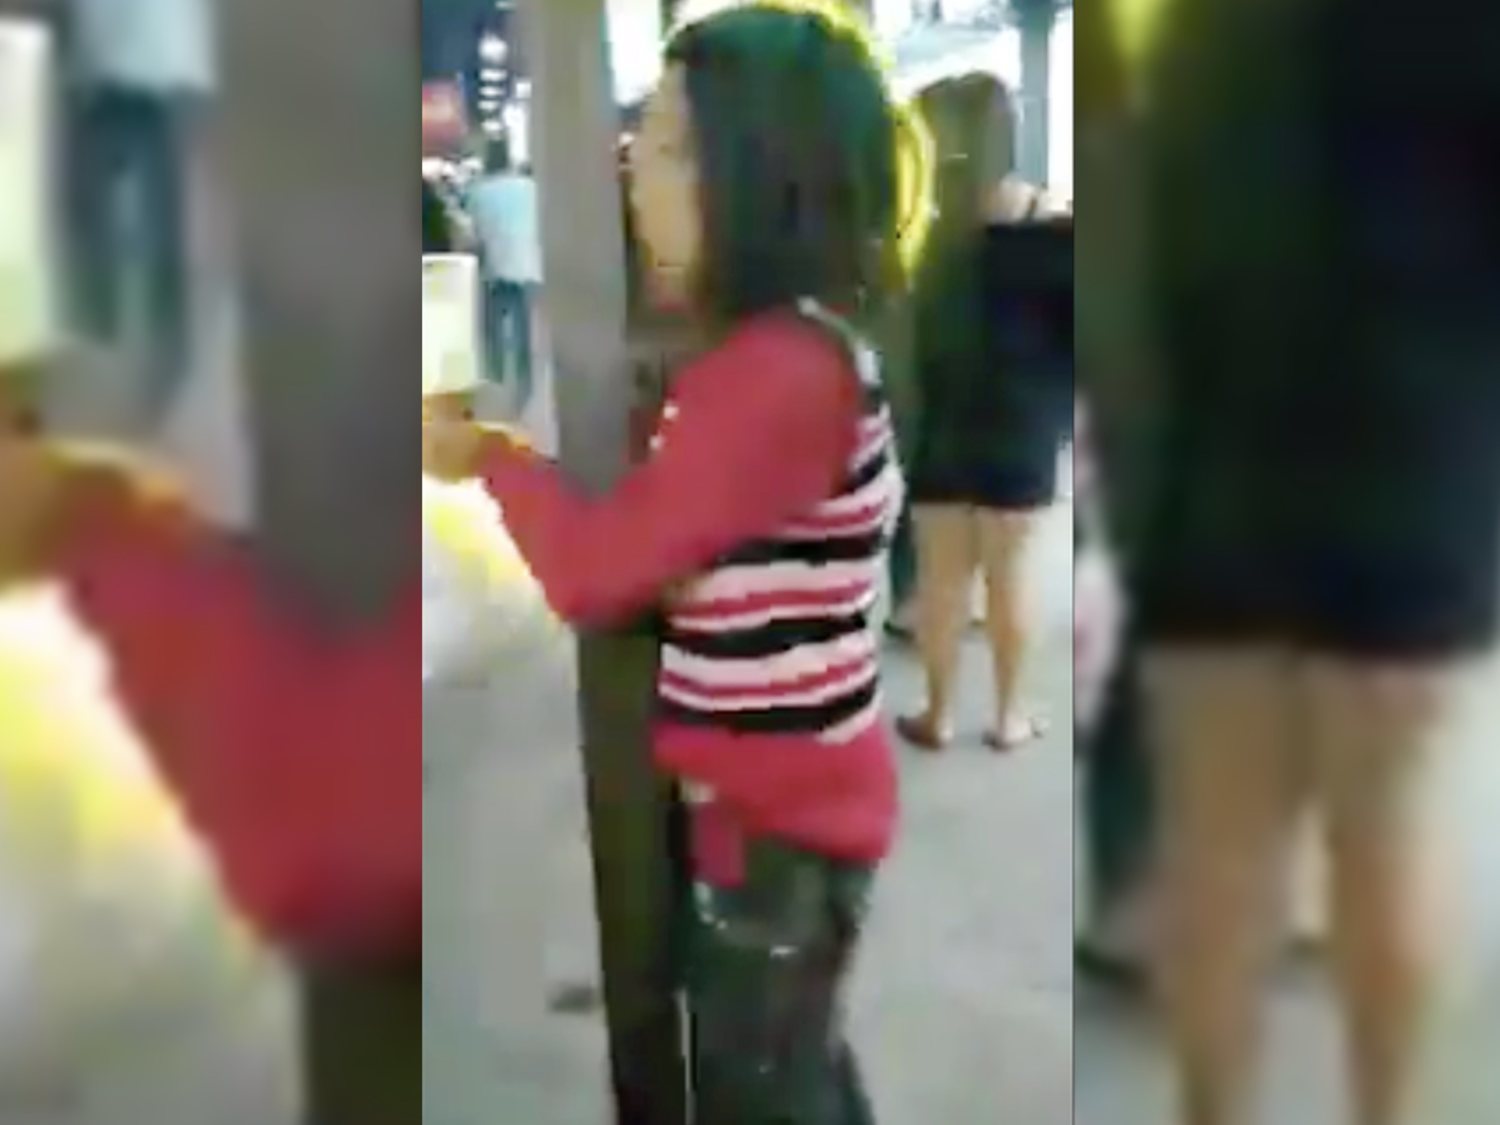 Graban a una mujer manteniendo relaciones con una farola en mitad de la calle